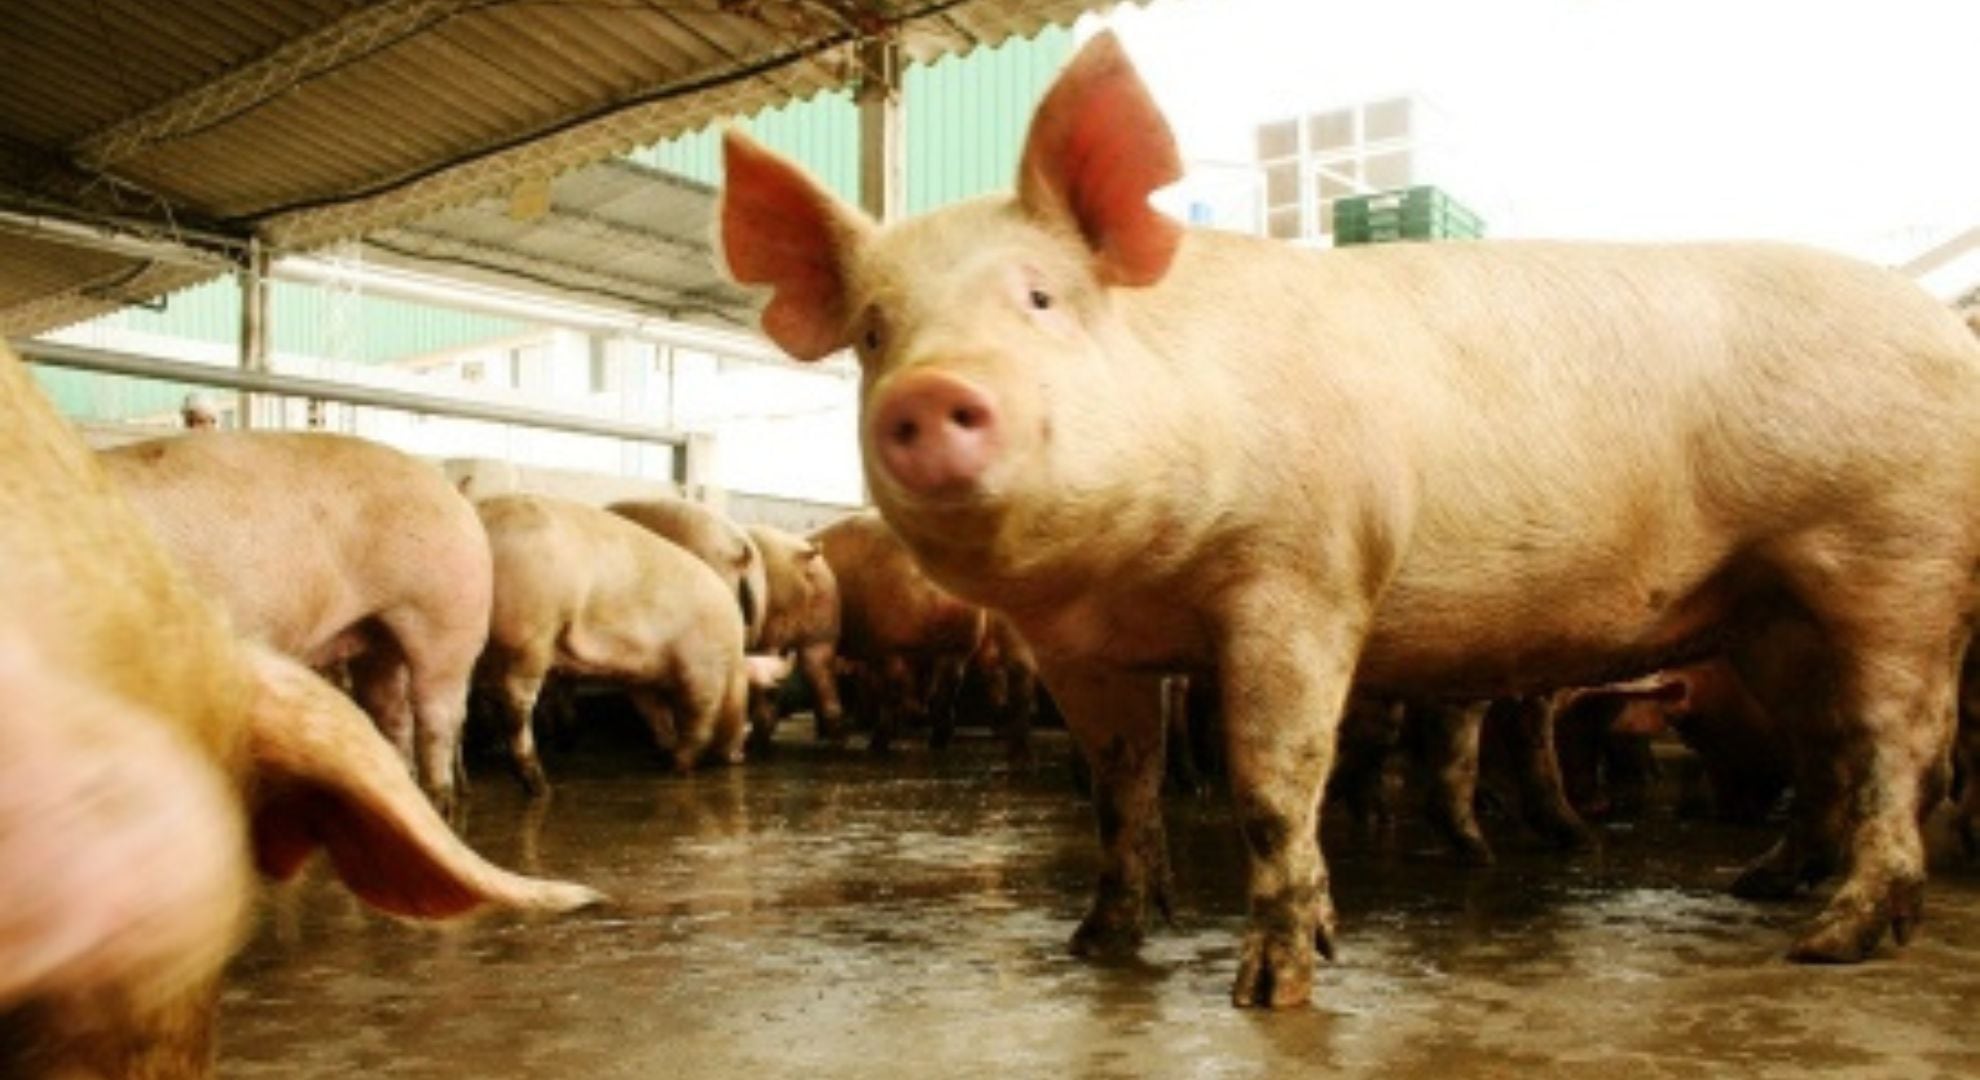 Los órganos de cerdo tienen muchas similitudes con los humanos y muchos son aptos para trasplante (Télam)